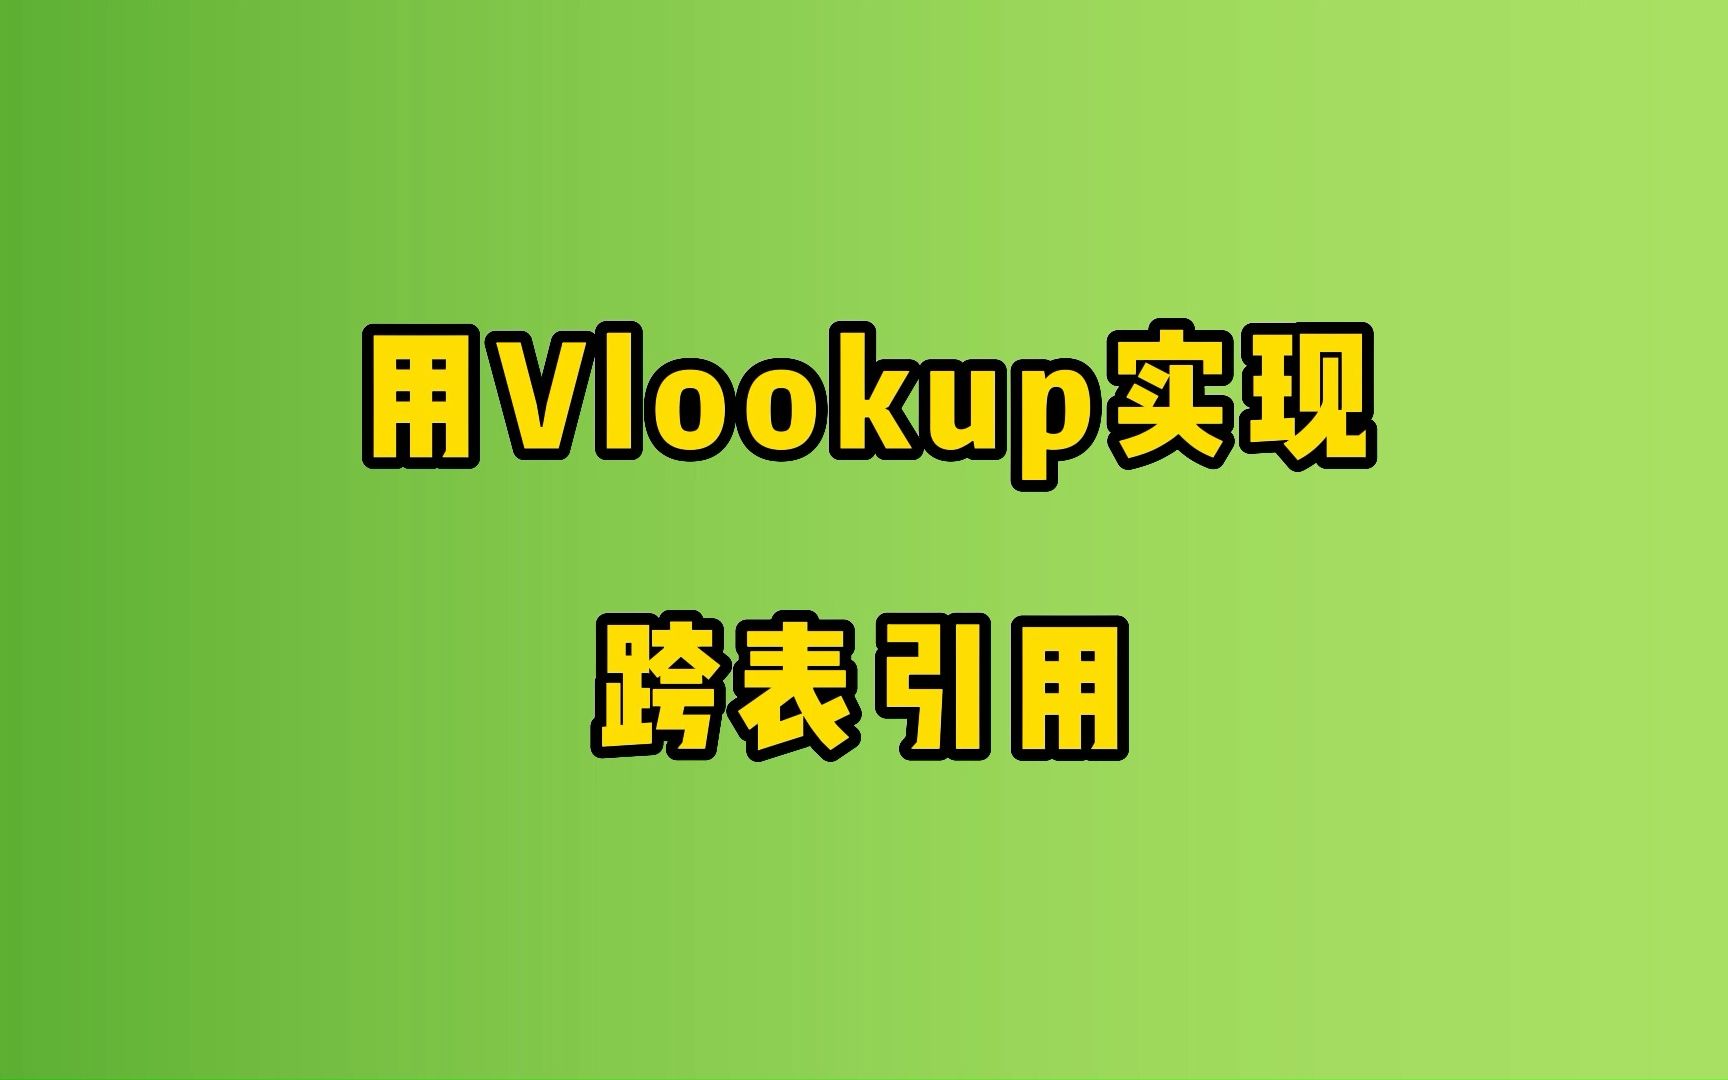 vlookup函数教程:用vlookup函数嵌套实现跨表引用提取数据